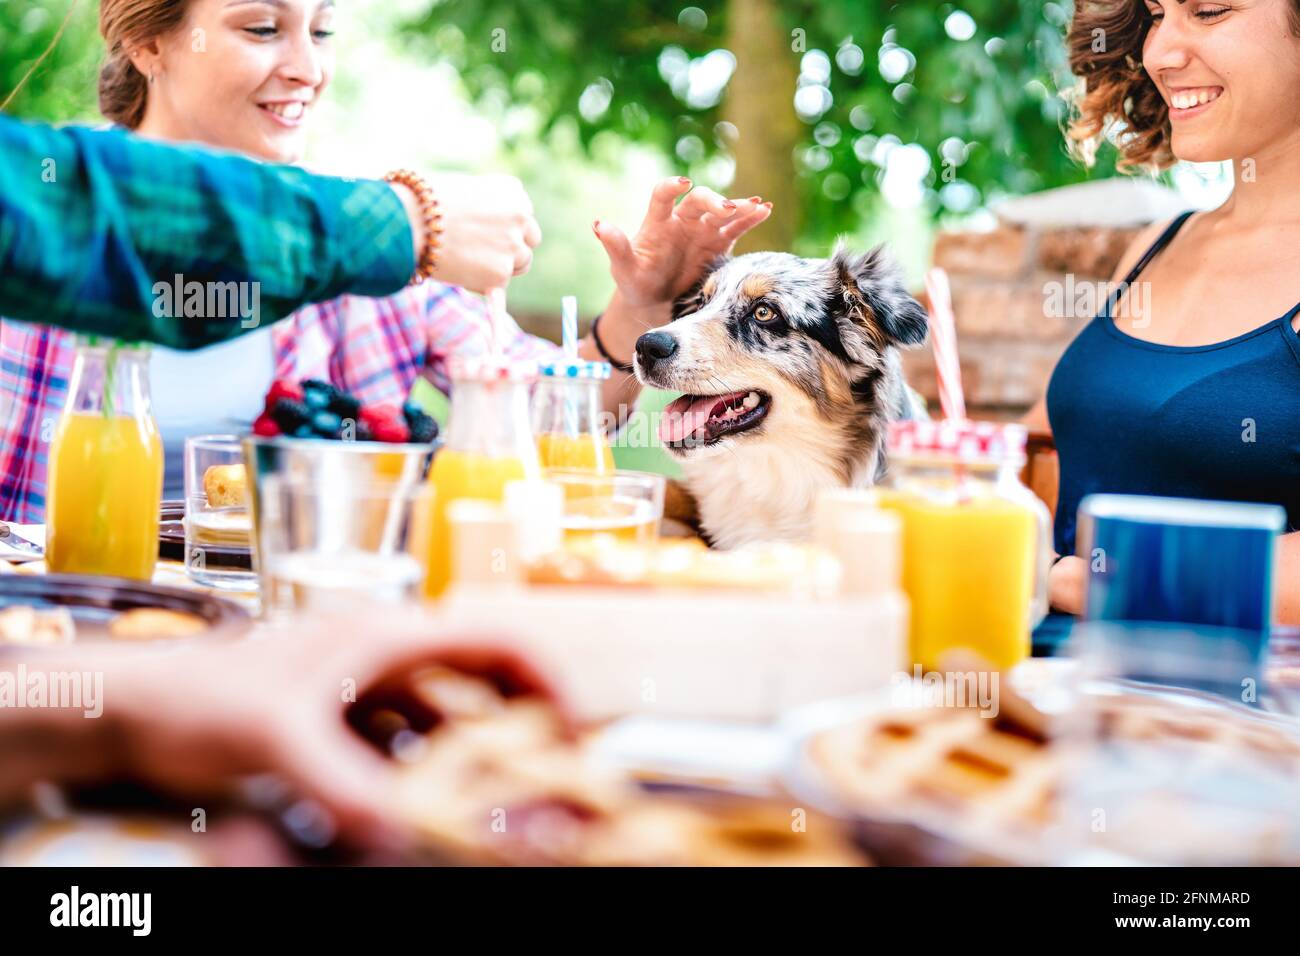 Junge Frauen auf gesunde pic nic Frühstück mit niedlichen Welpen Auf dem Land Bauernhof Haus - echtes Lifestyle-Konzept mit Millennial Freunde, die Spaß haben Stockfoto